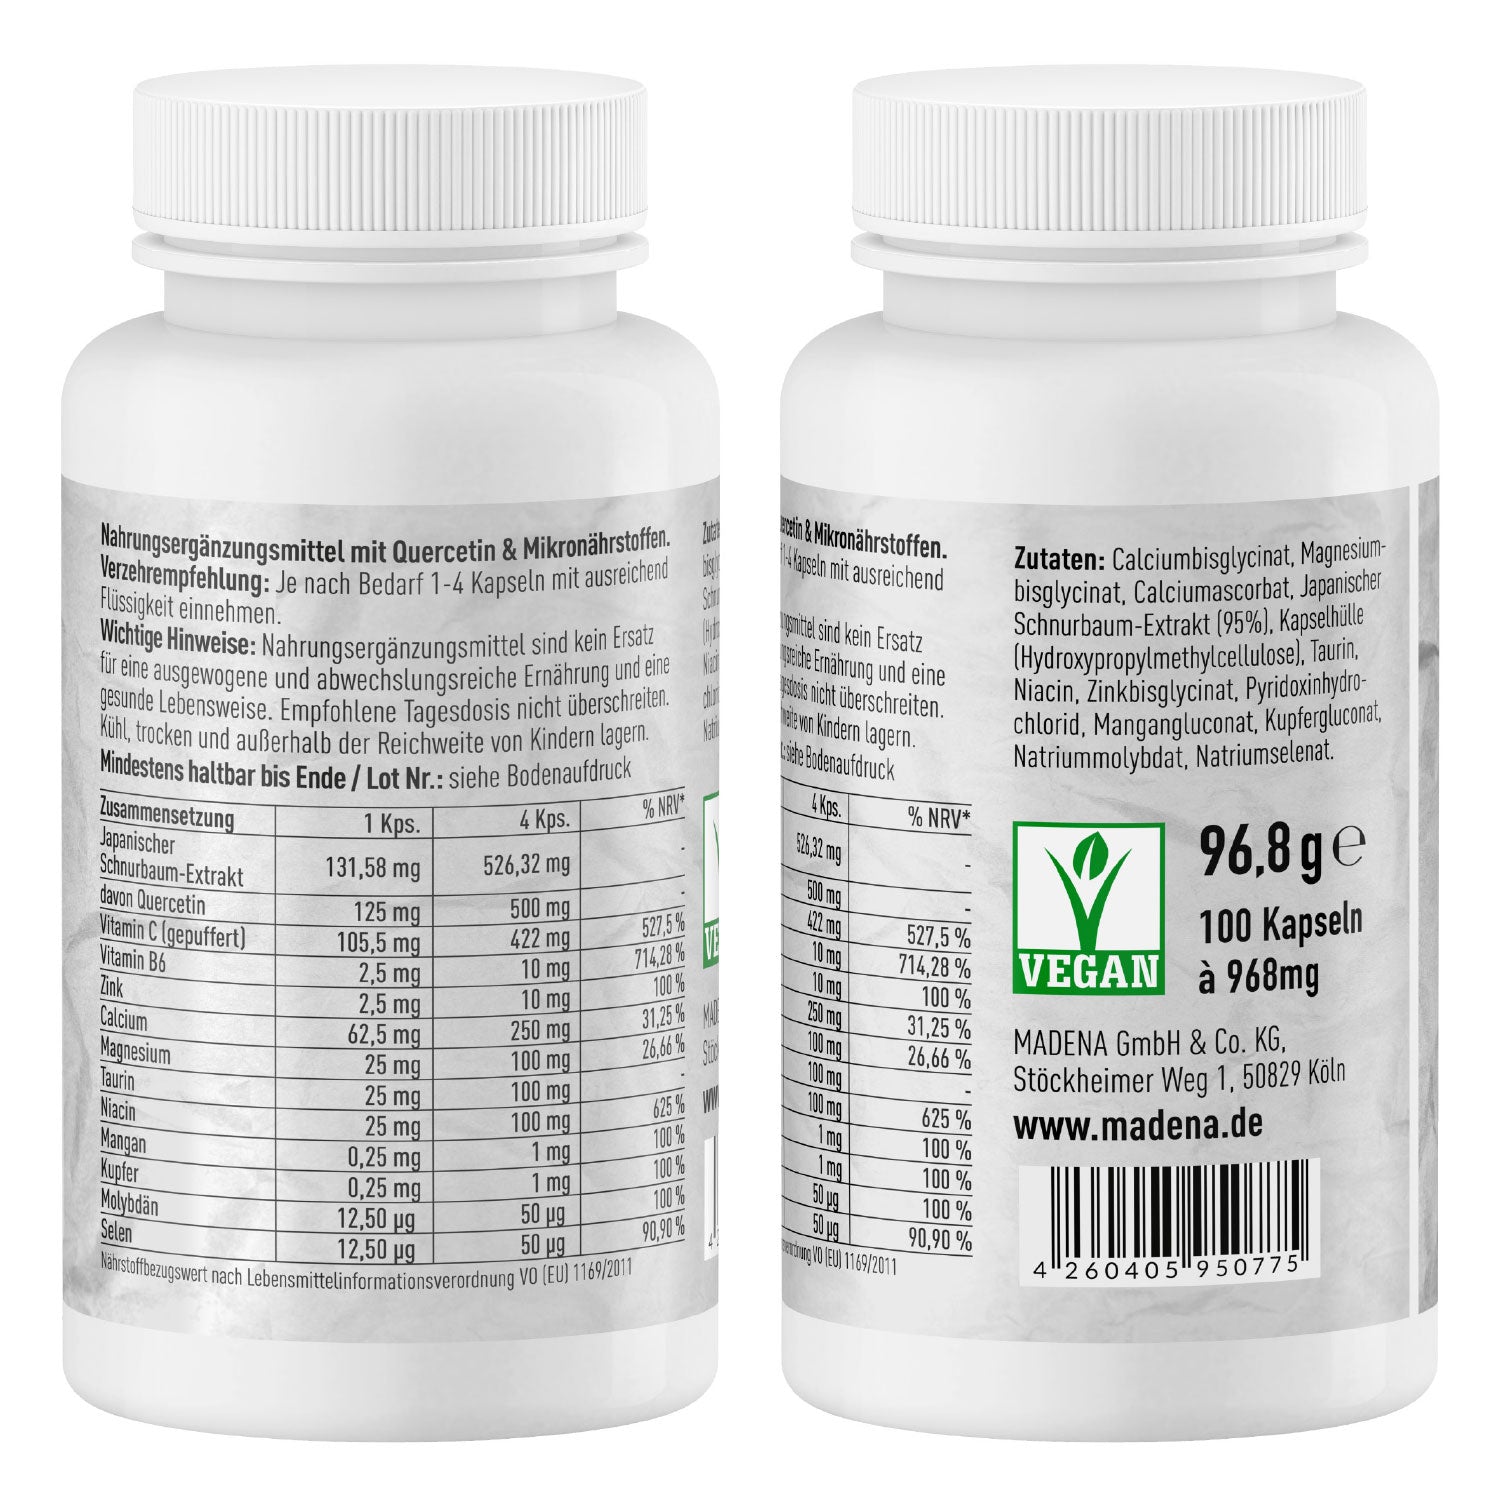 HistaVital®: Quercetin-Komplex bei Histamin-Intoleranz